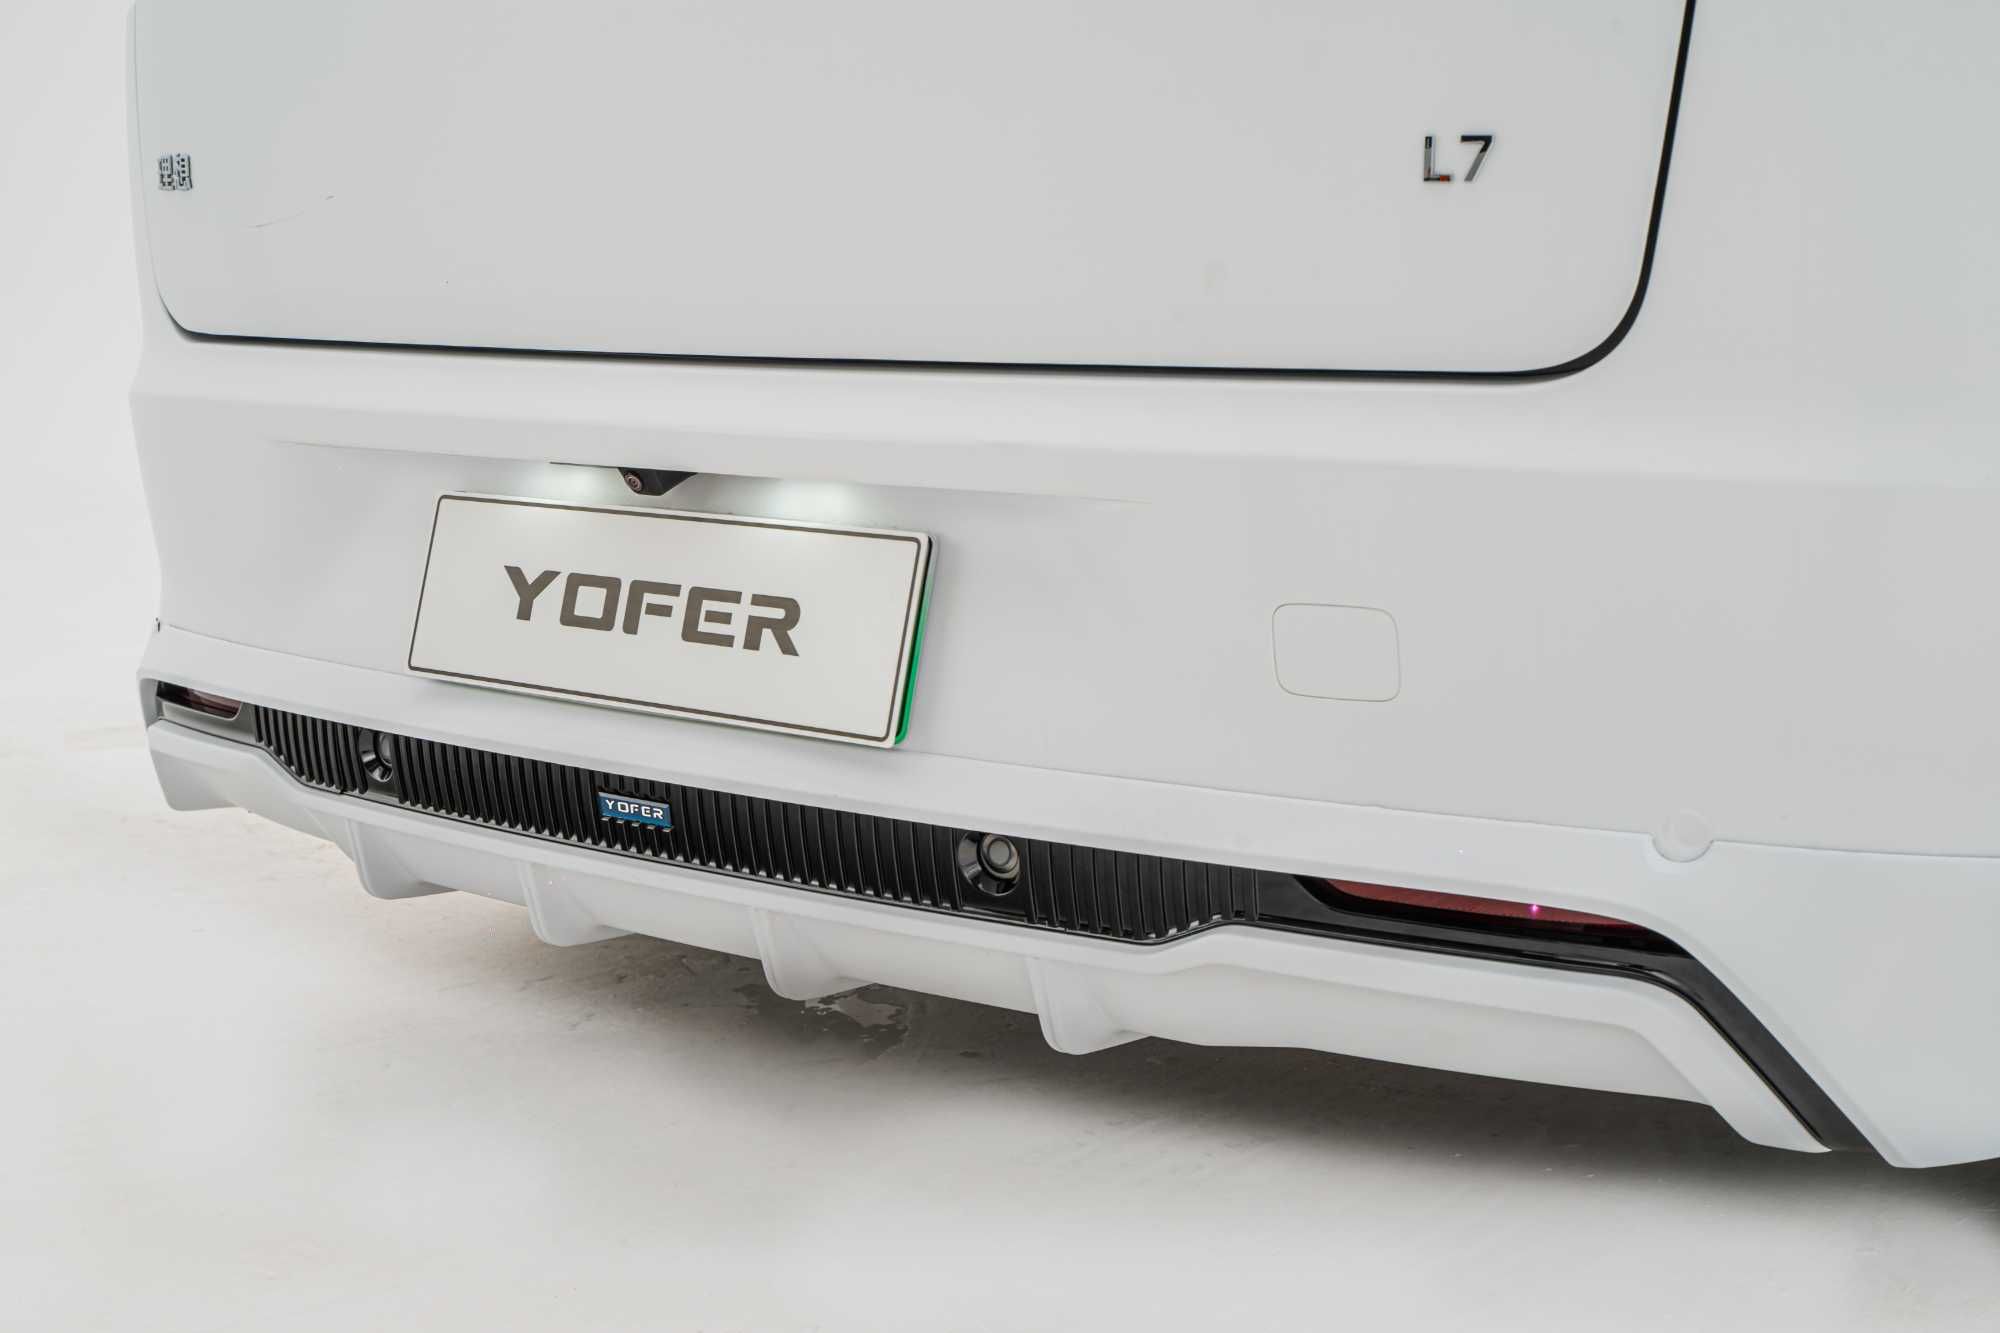 Комплект обвеса (накладки) Yofer для Li L7